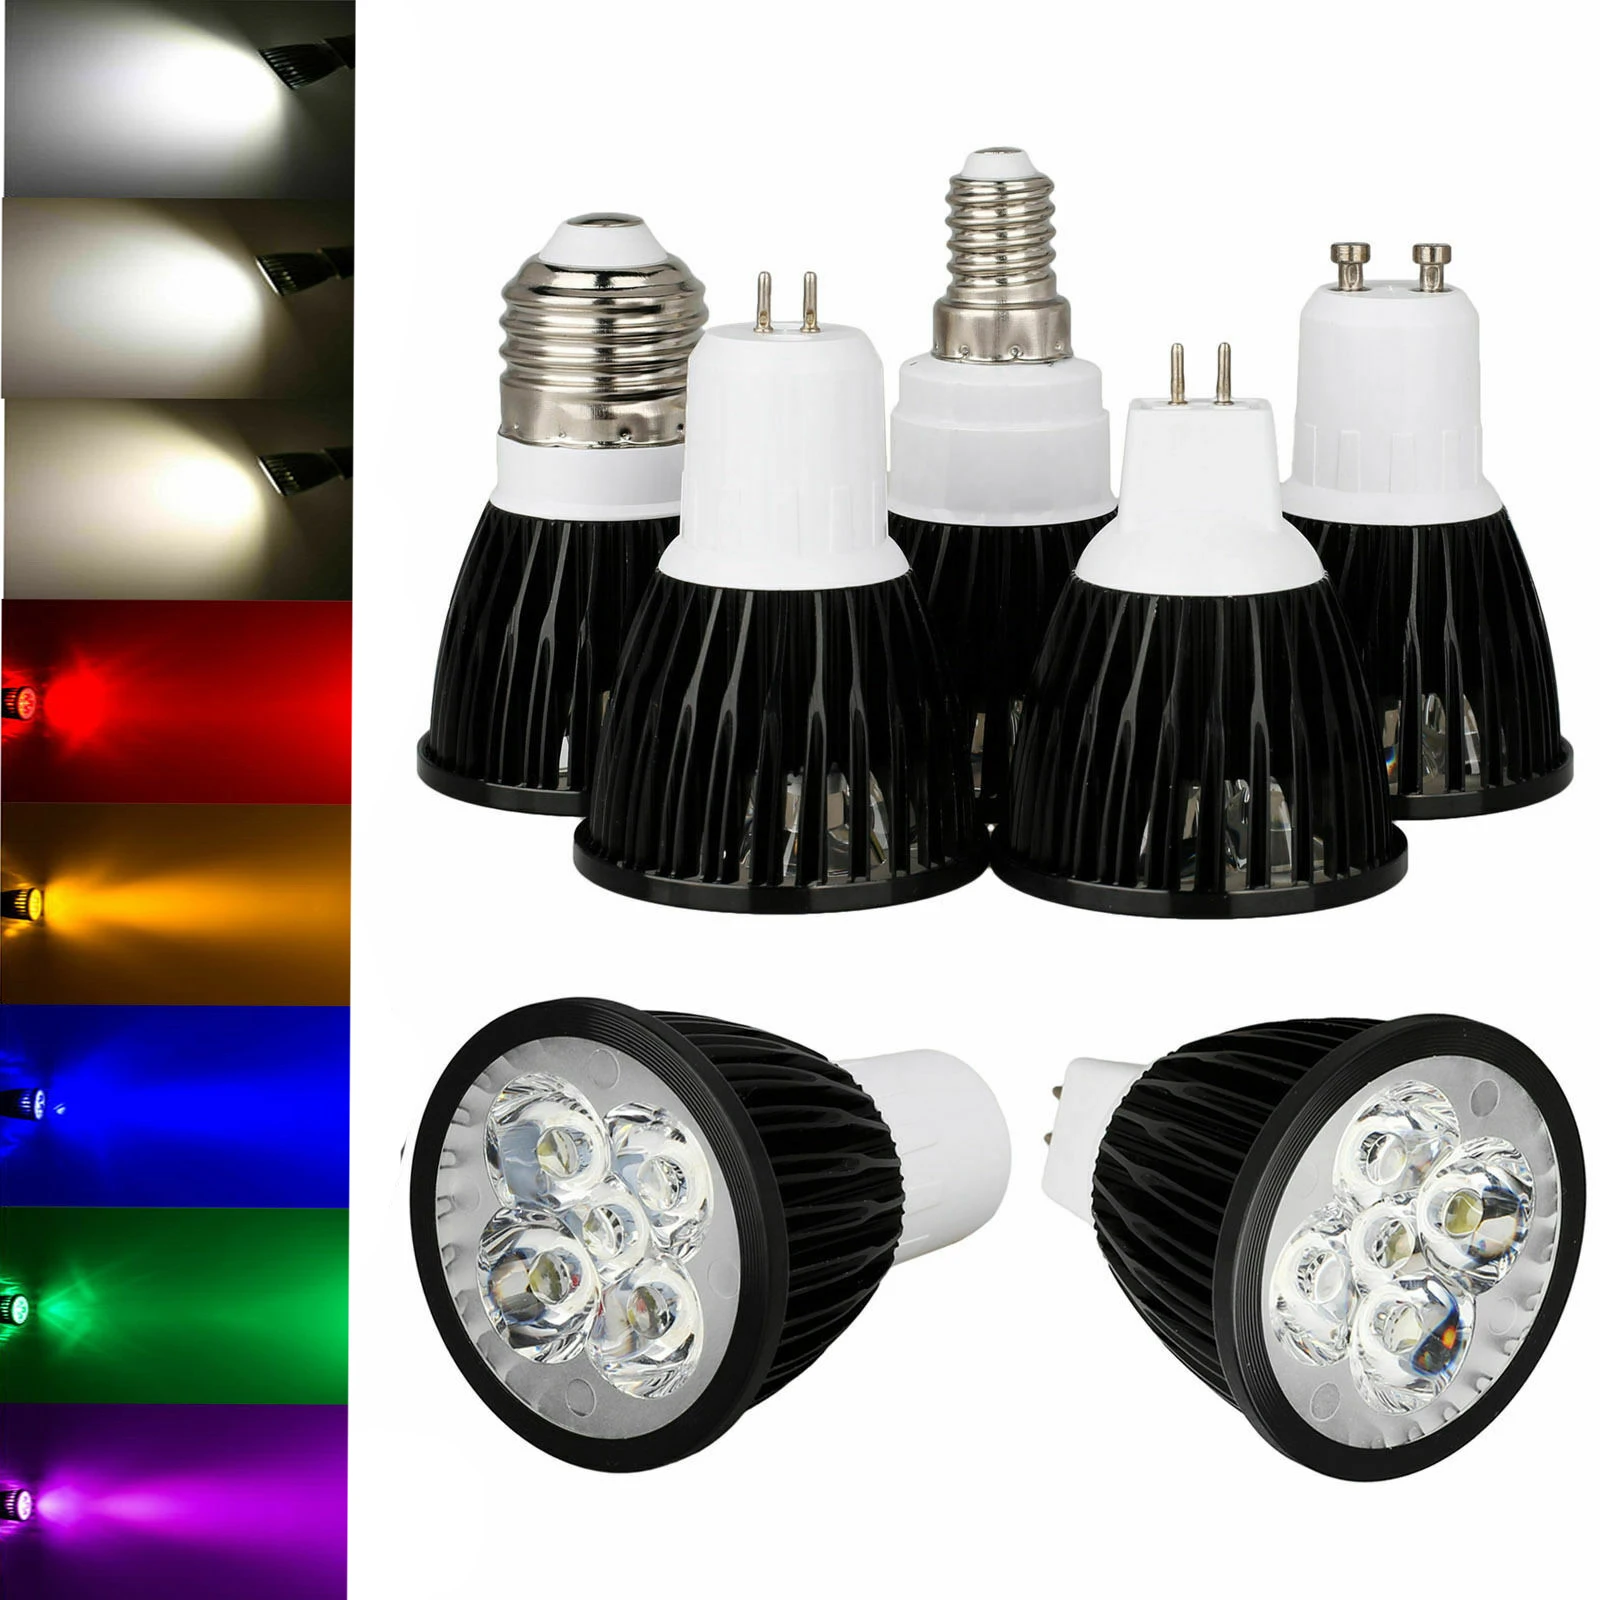 

Dimmable LED Lampada LED Spotlight E26 E27 E14 GU10 MR16 GU5.3 9W 12W 15W Black Lamp Bulb Lighting AC 85-265V 110V 220V DC 12V